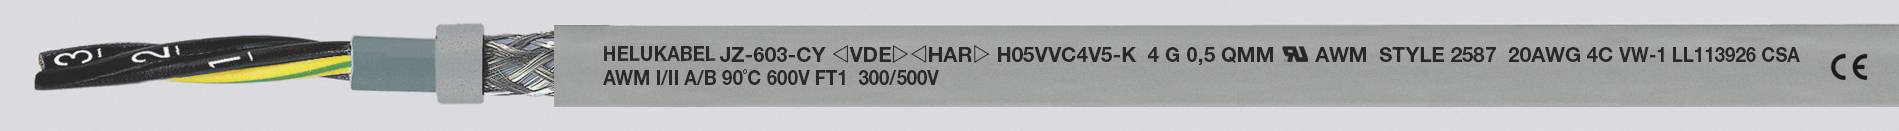 HELUKABEL JZ-603-CY Steuerleitung 5 G 1.50 mm² Grau 83755-500 500 m